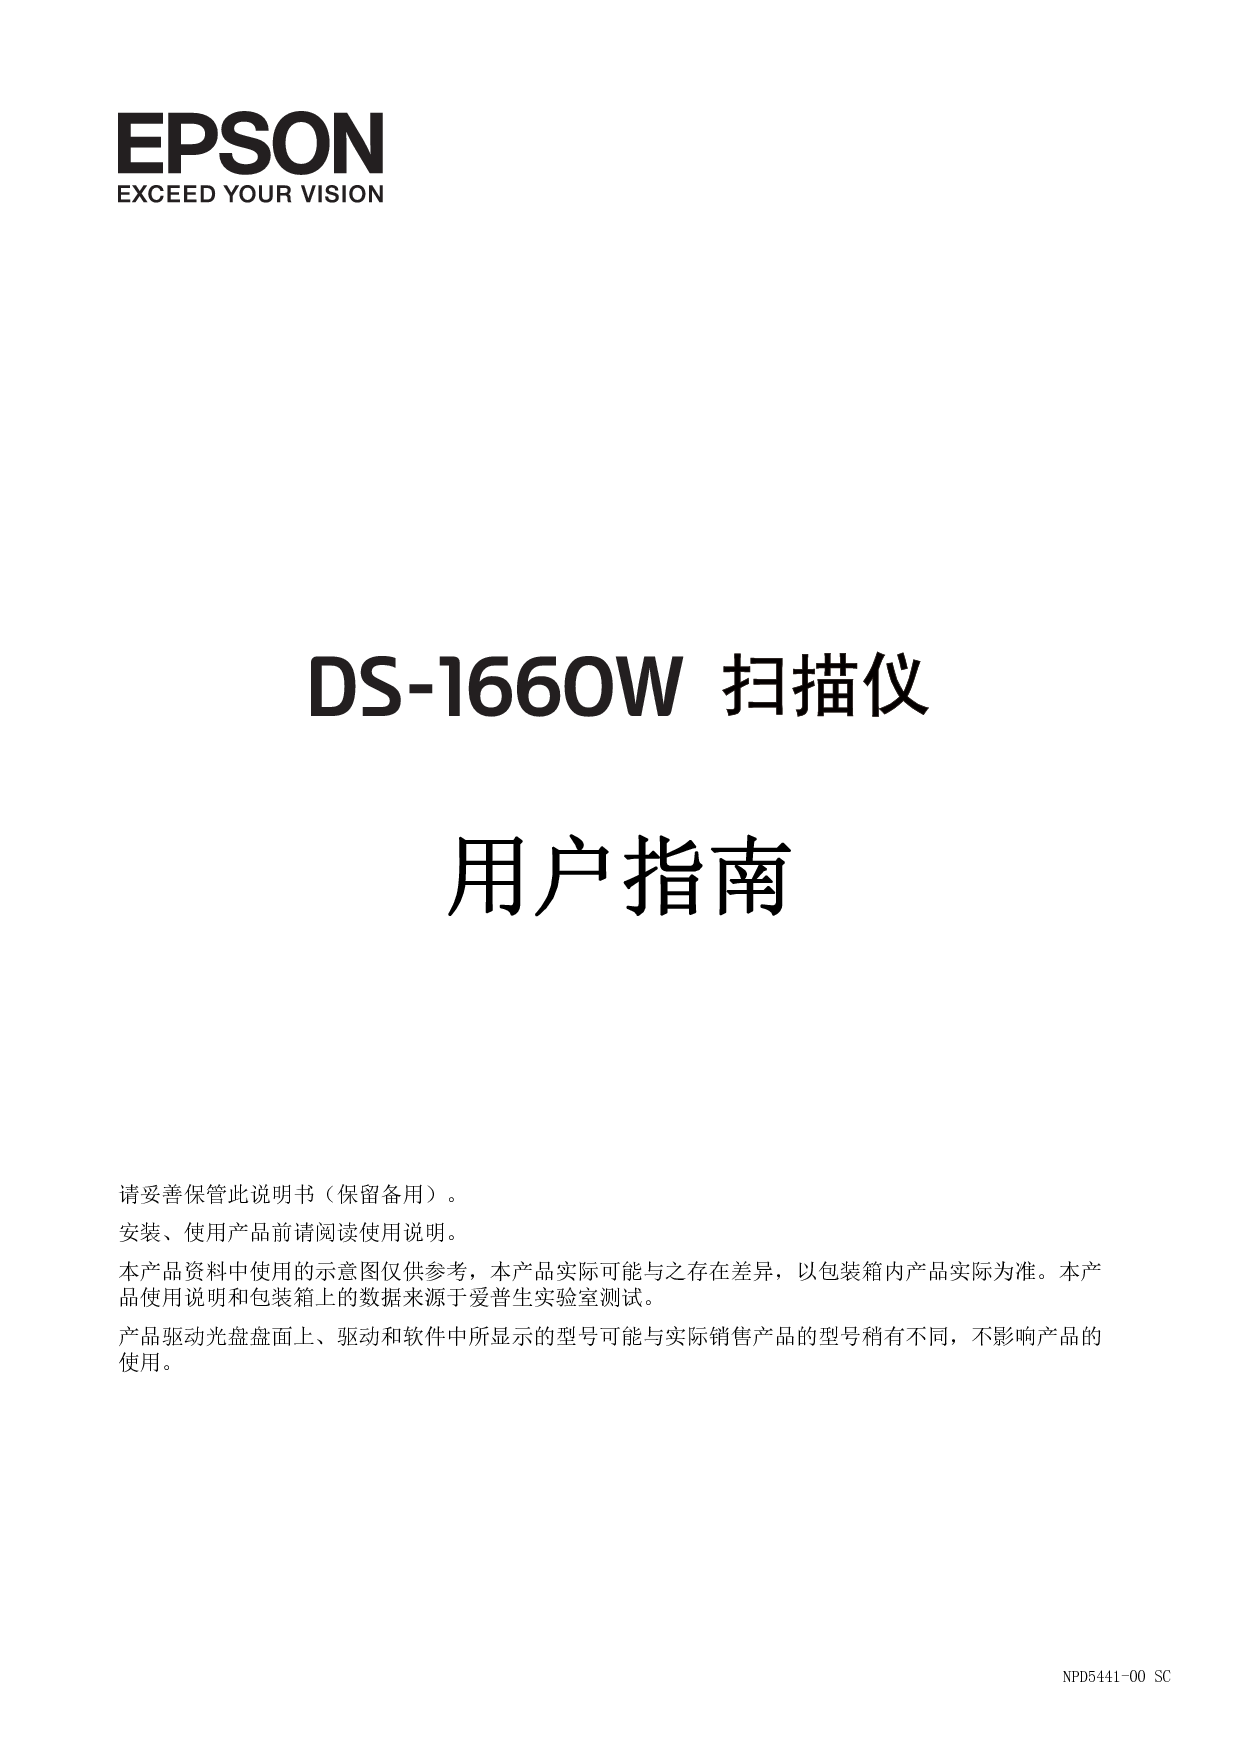 爱普生 Epson DS-1660W 用户指南 封面